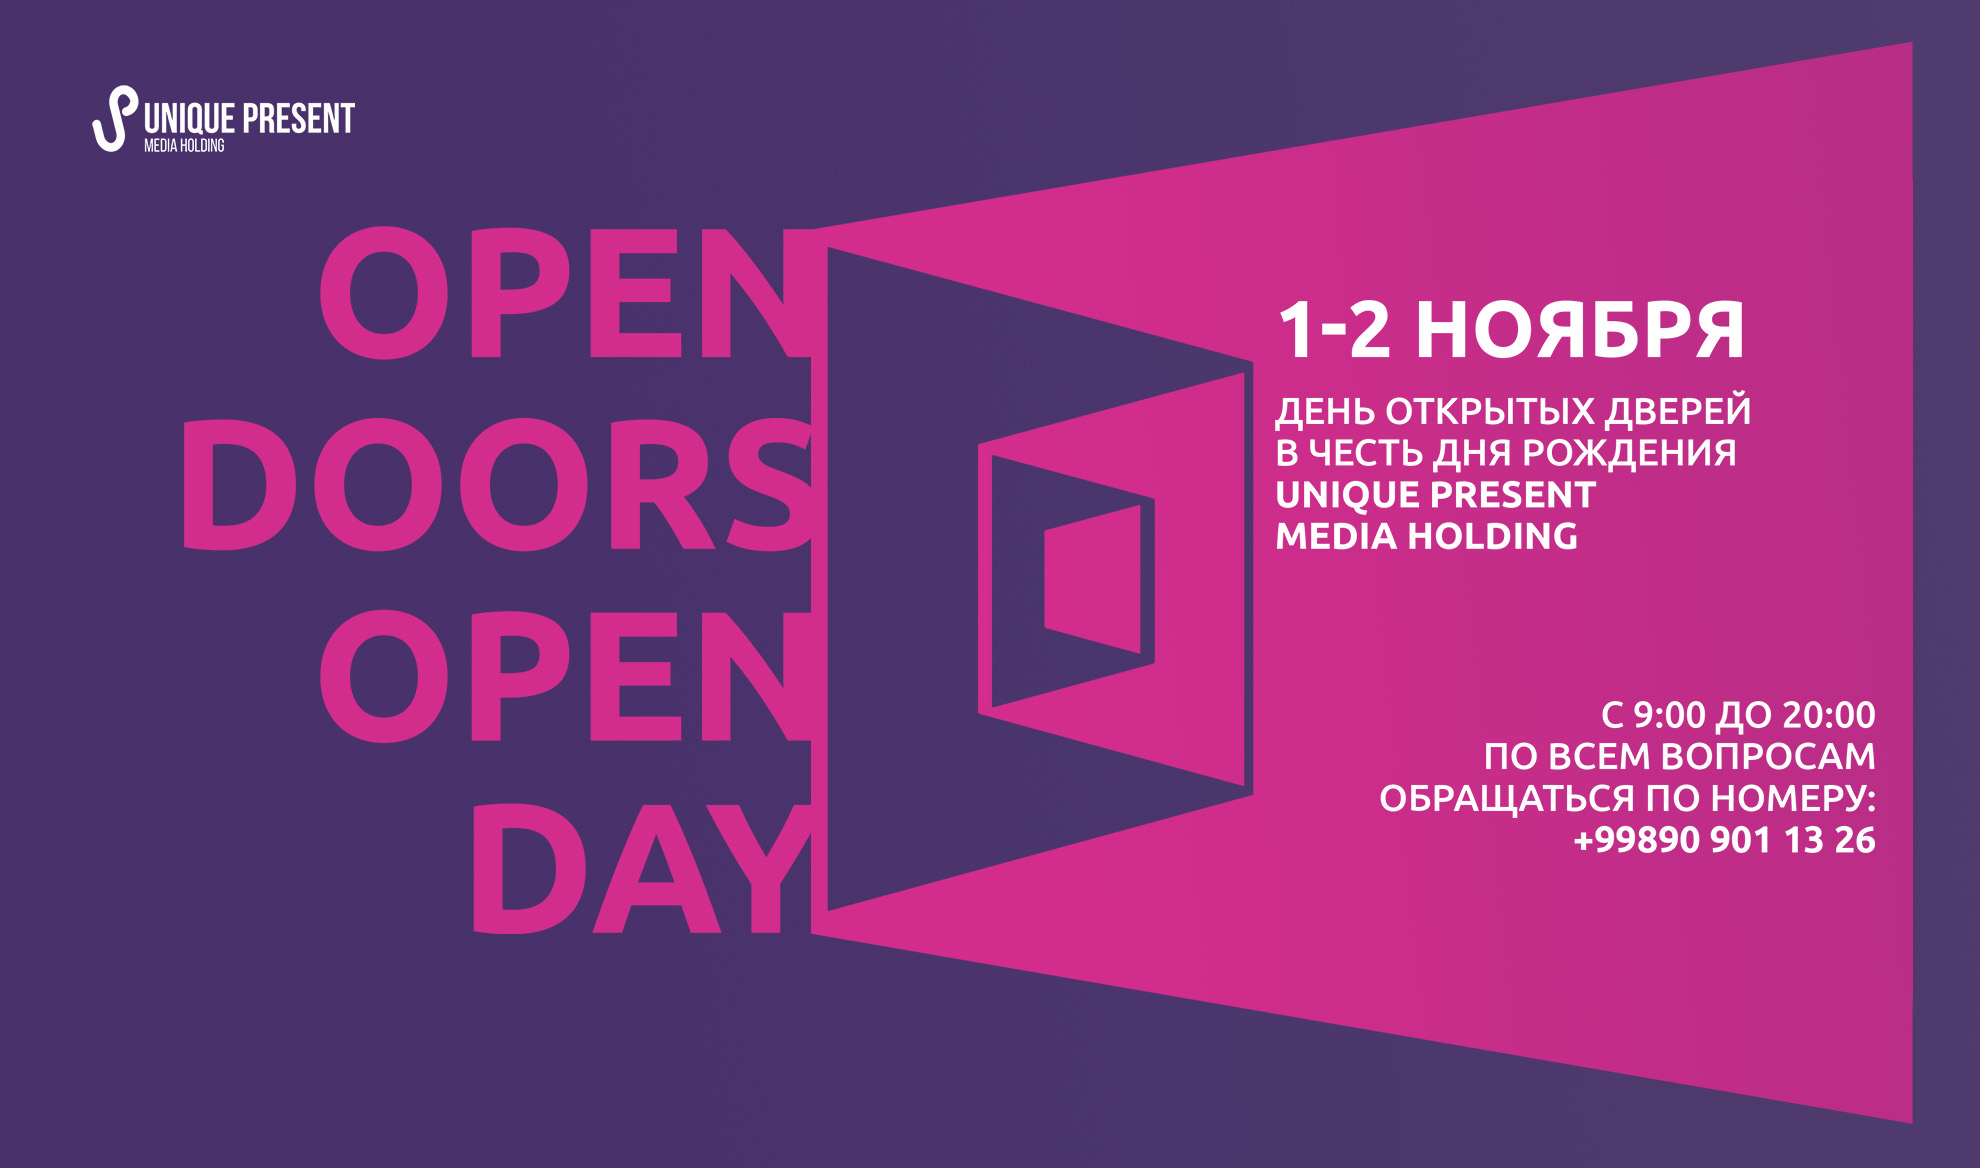 Unique Present Media Holding приглашает на День открытых дверей 1 и 2 ноября